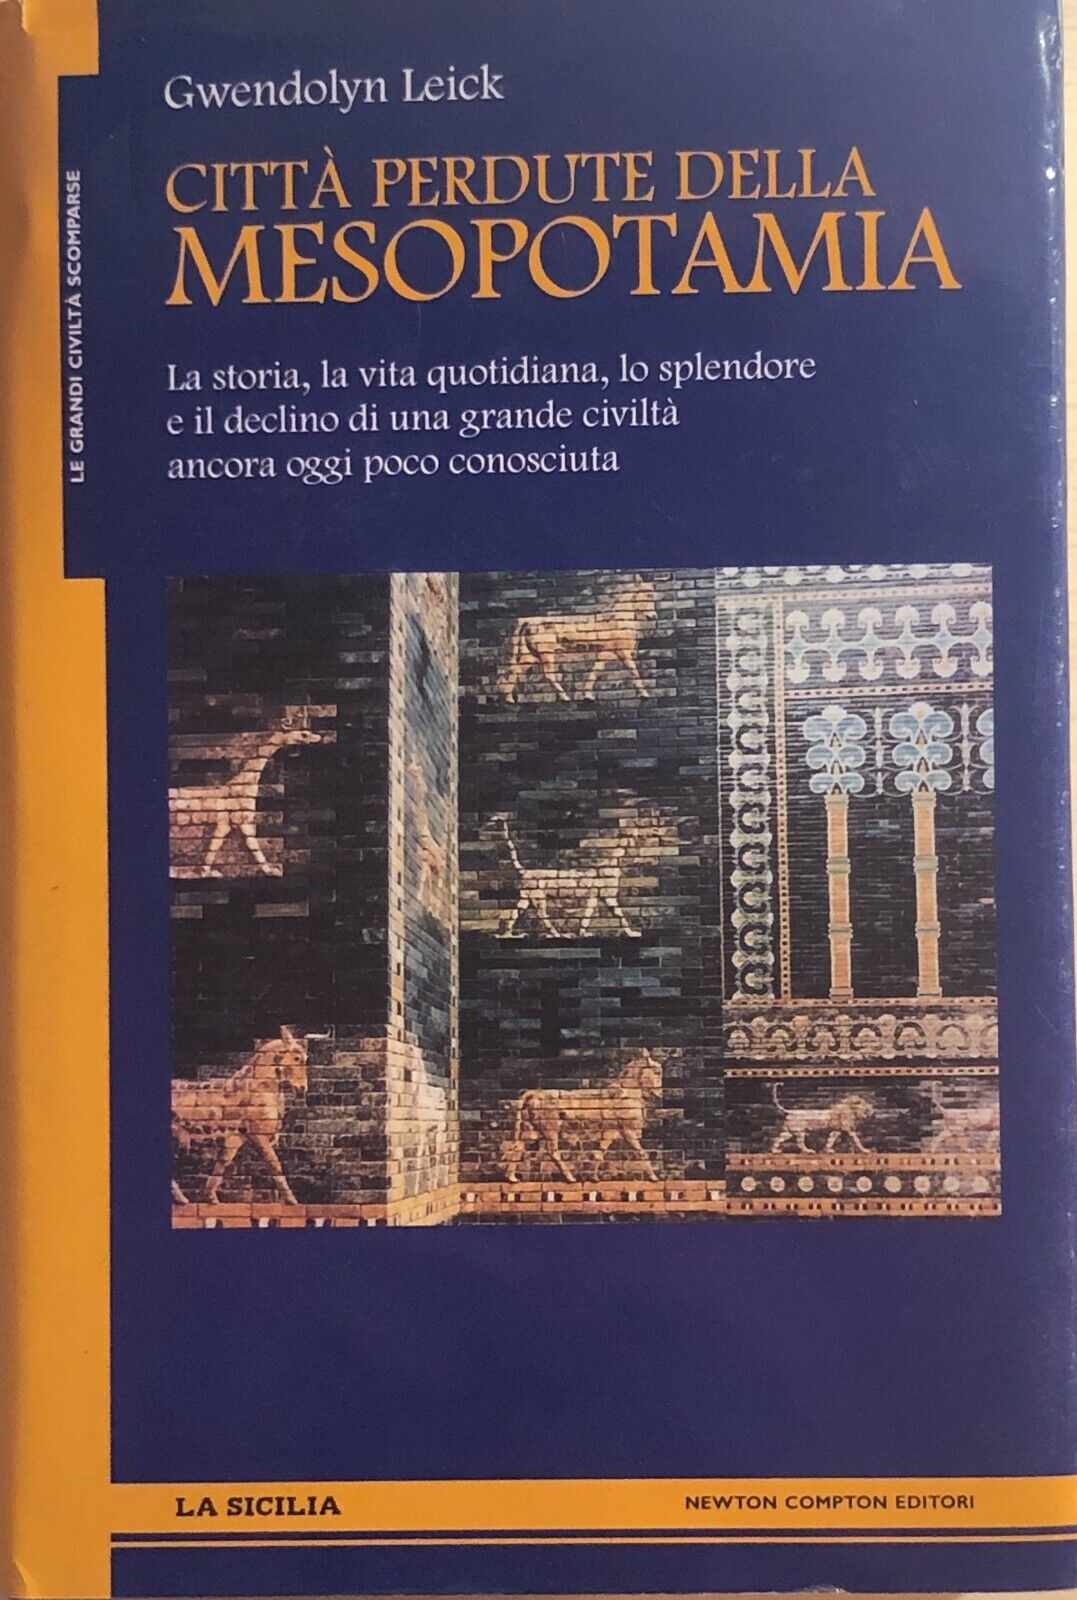 Citt? perdute della Mesopotamia di Gwendolyn Leick, 2006, Newton Compton Editori